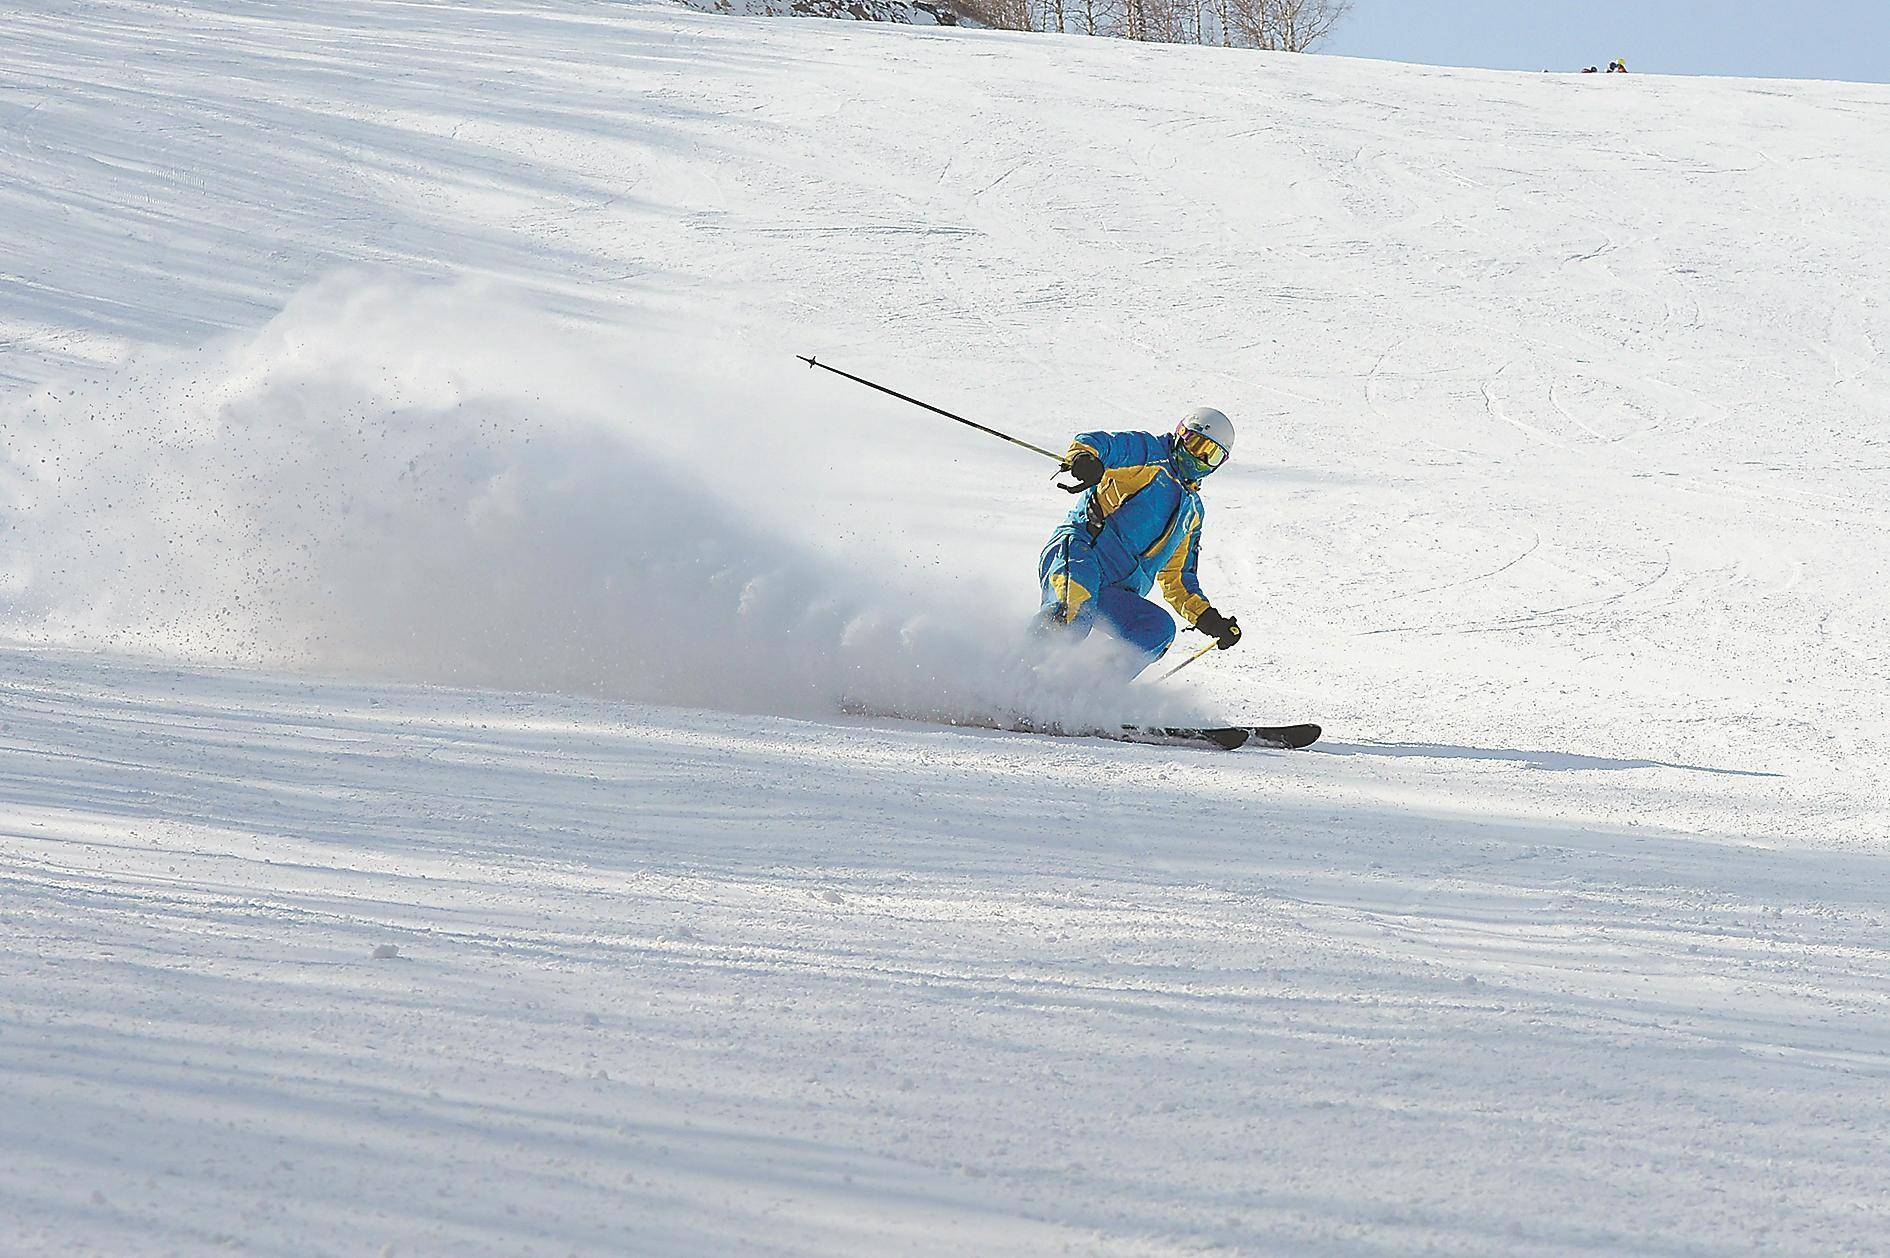 国内知名滑雪教练遇难引发讨论 面对滑雪的危险我  们该怎么做？  ,滑雪